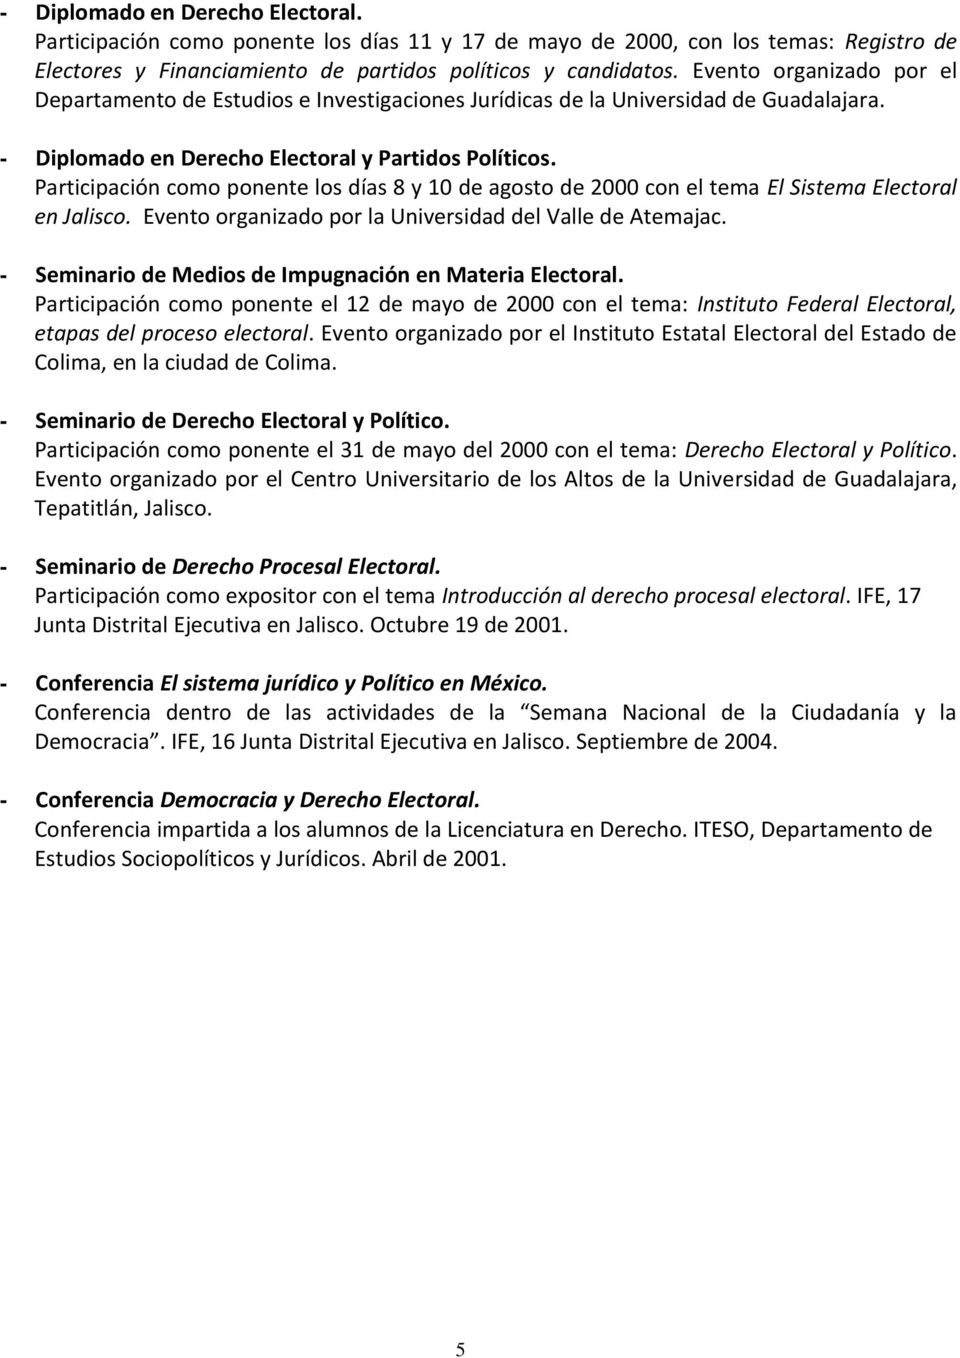 Participación como ponente los días 8 y 10 de agosto de 2000 con el tema El Sistema Electoral en Jalisco. Evento organizado por la Universidad del Valle de Atemajac.